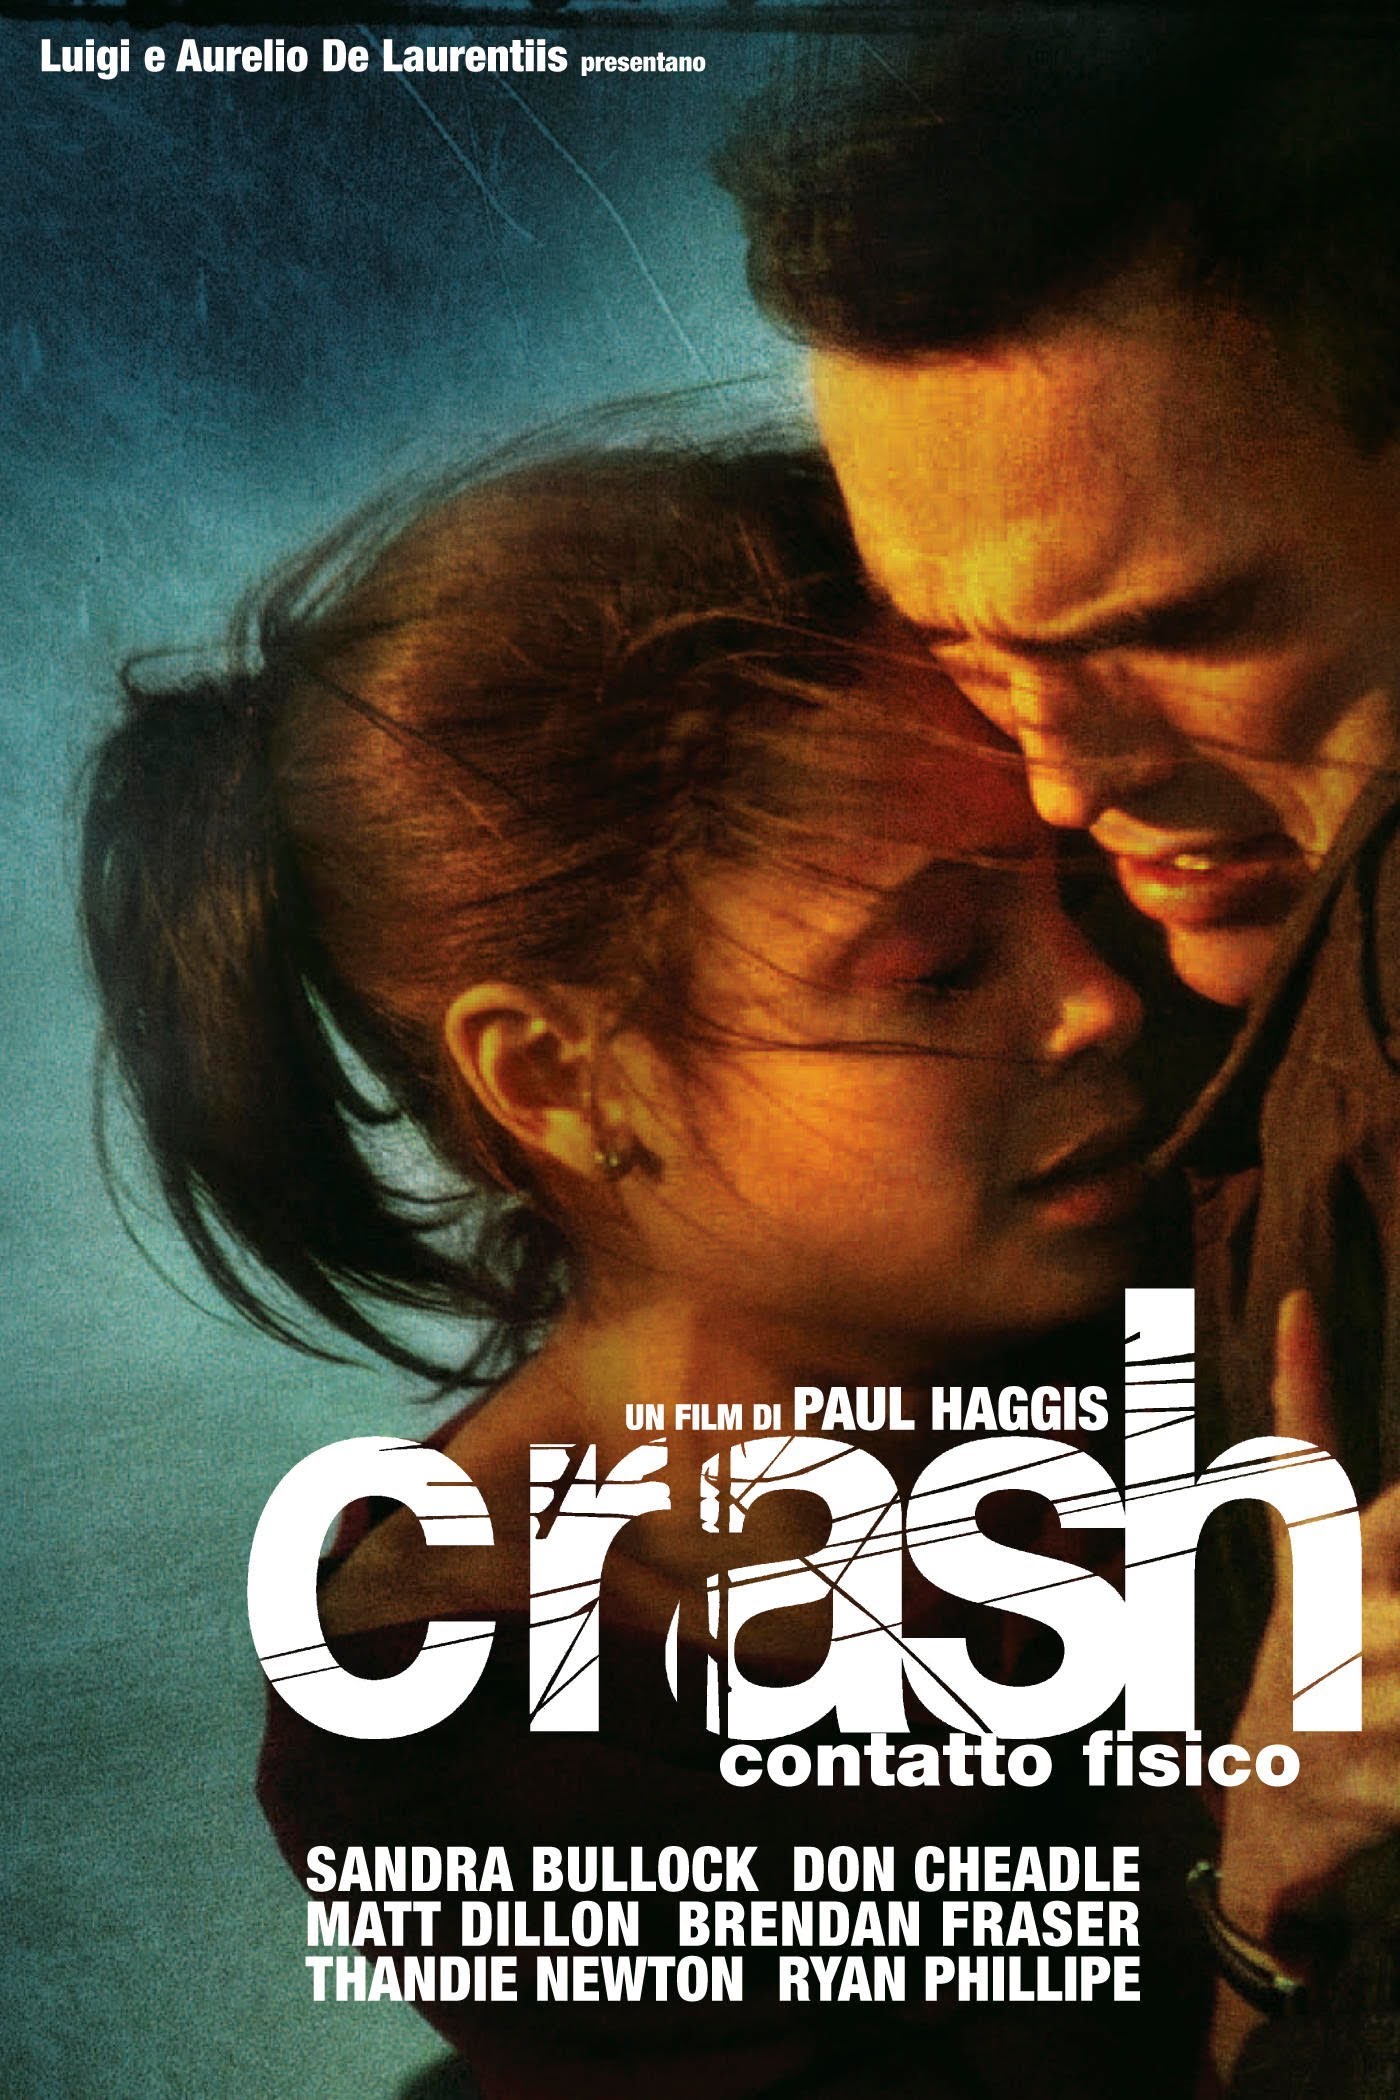 Crash – Contatto fisico [HD] (2004)